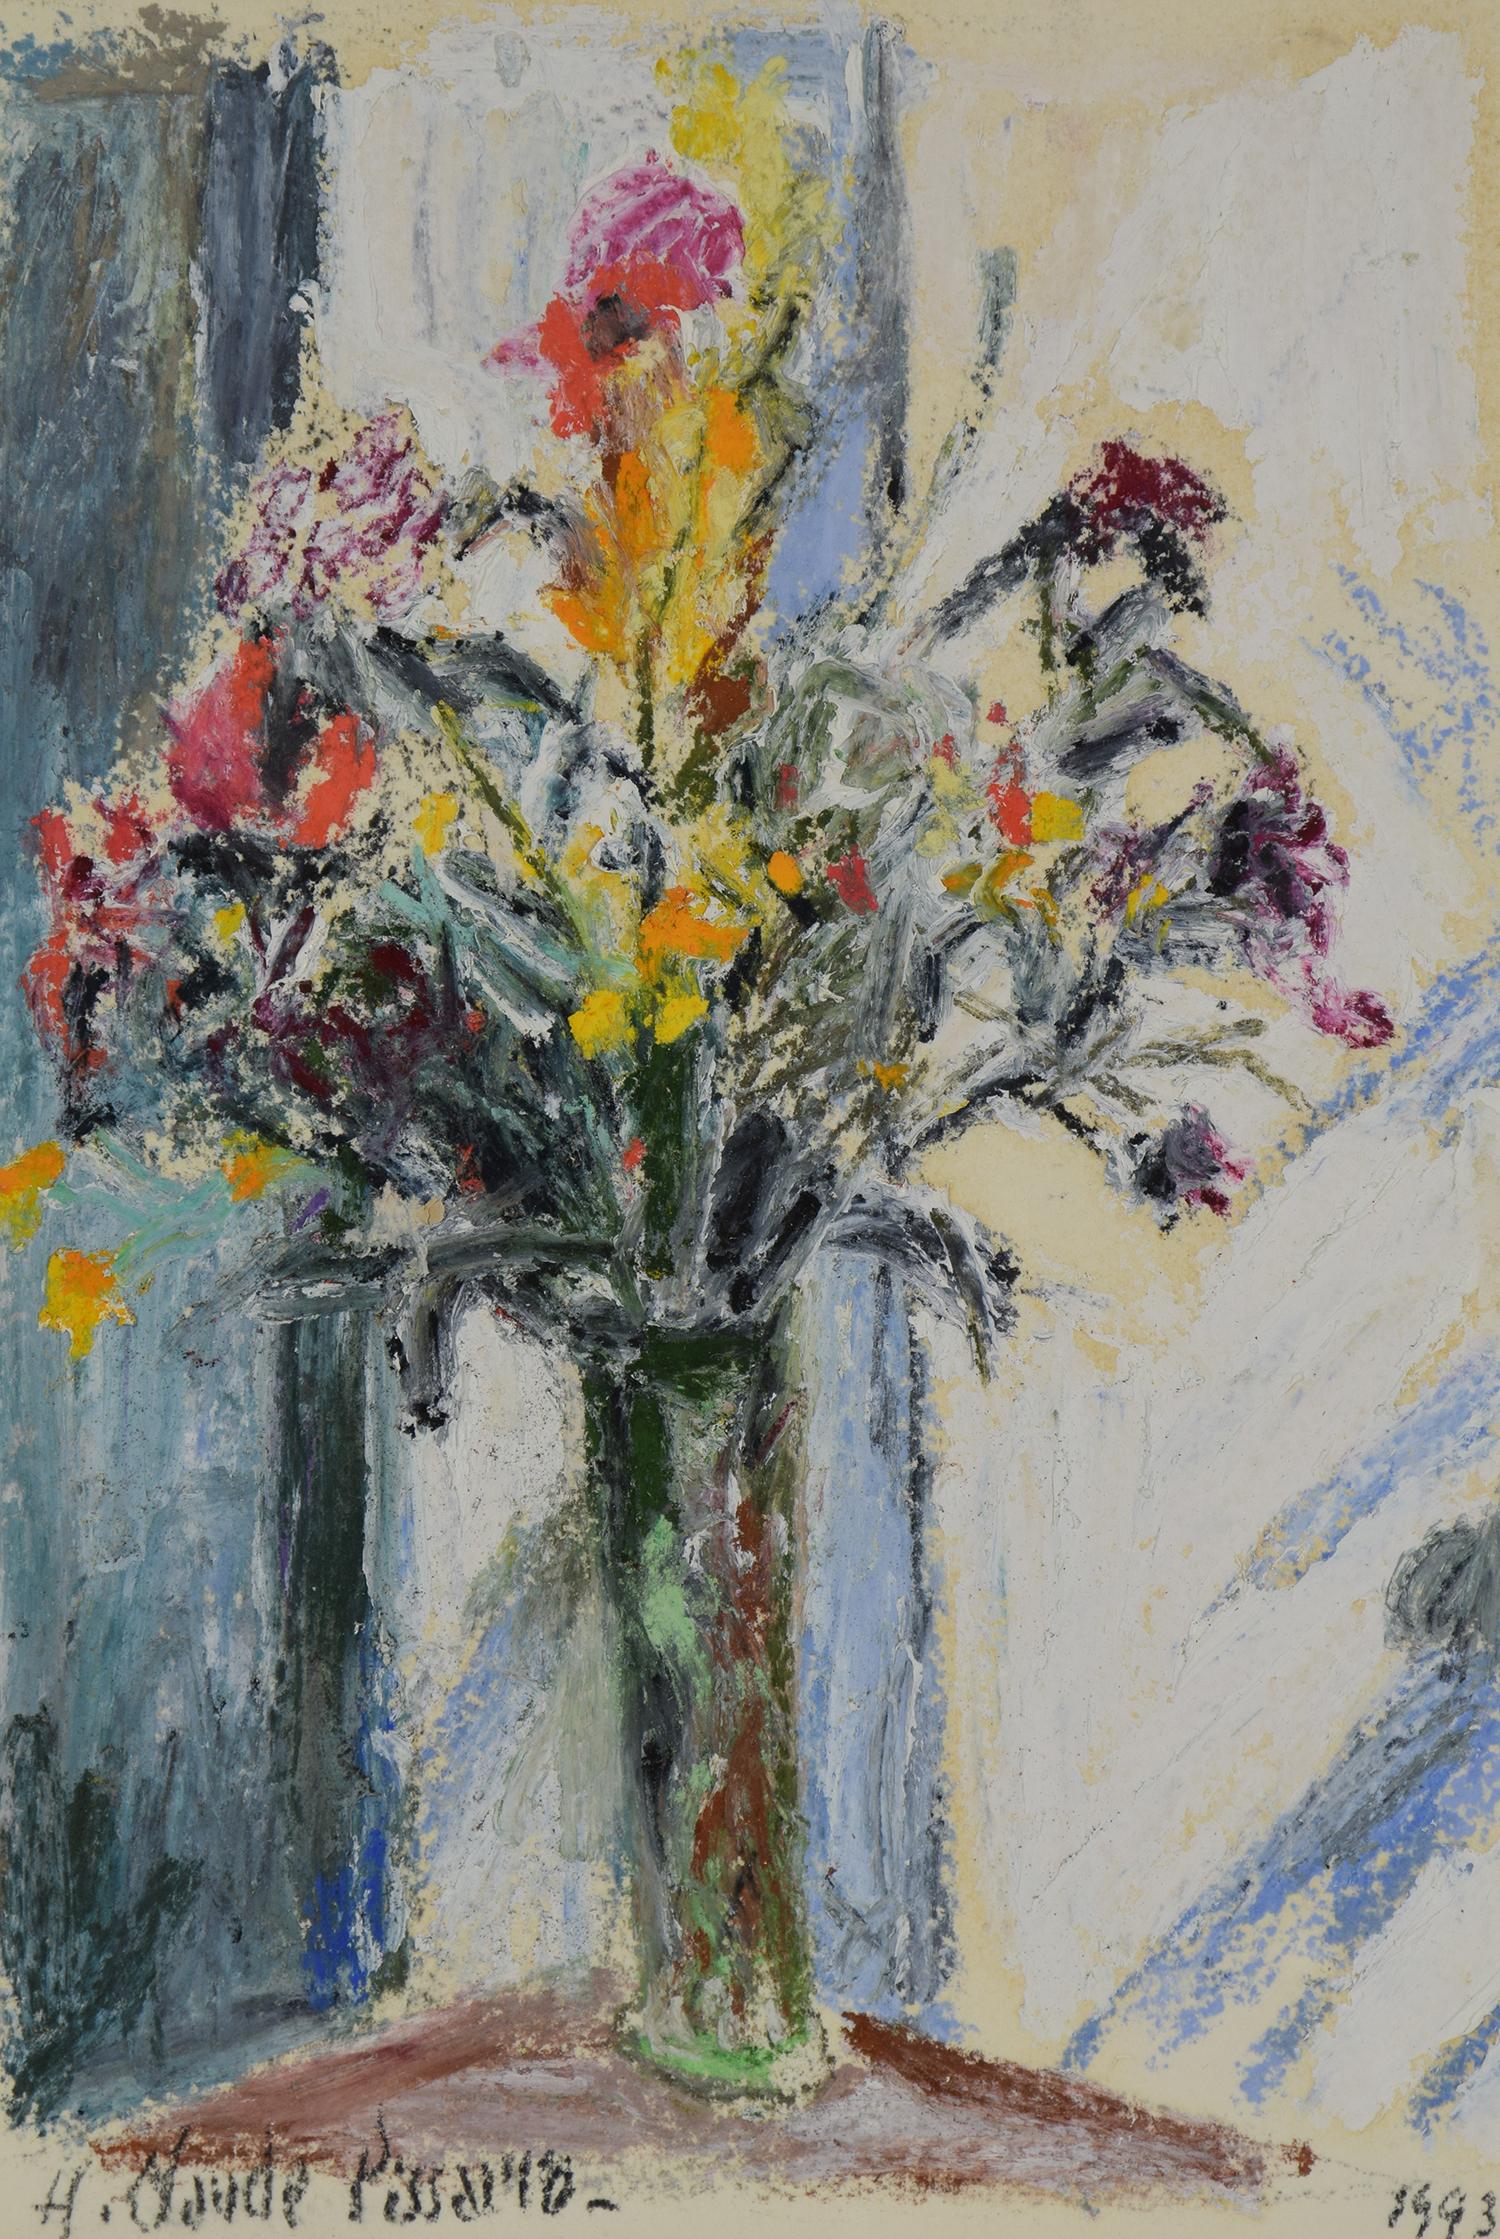 Fleurs by Hugues Pissarro dit Pomié - Contemporary flower painting